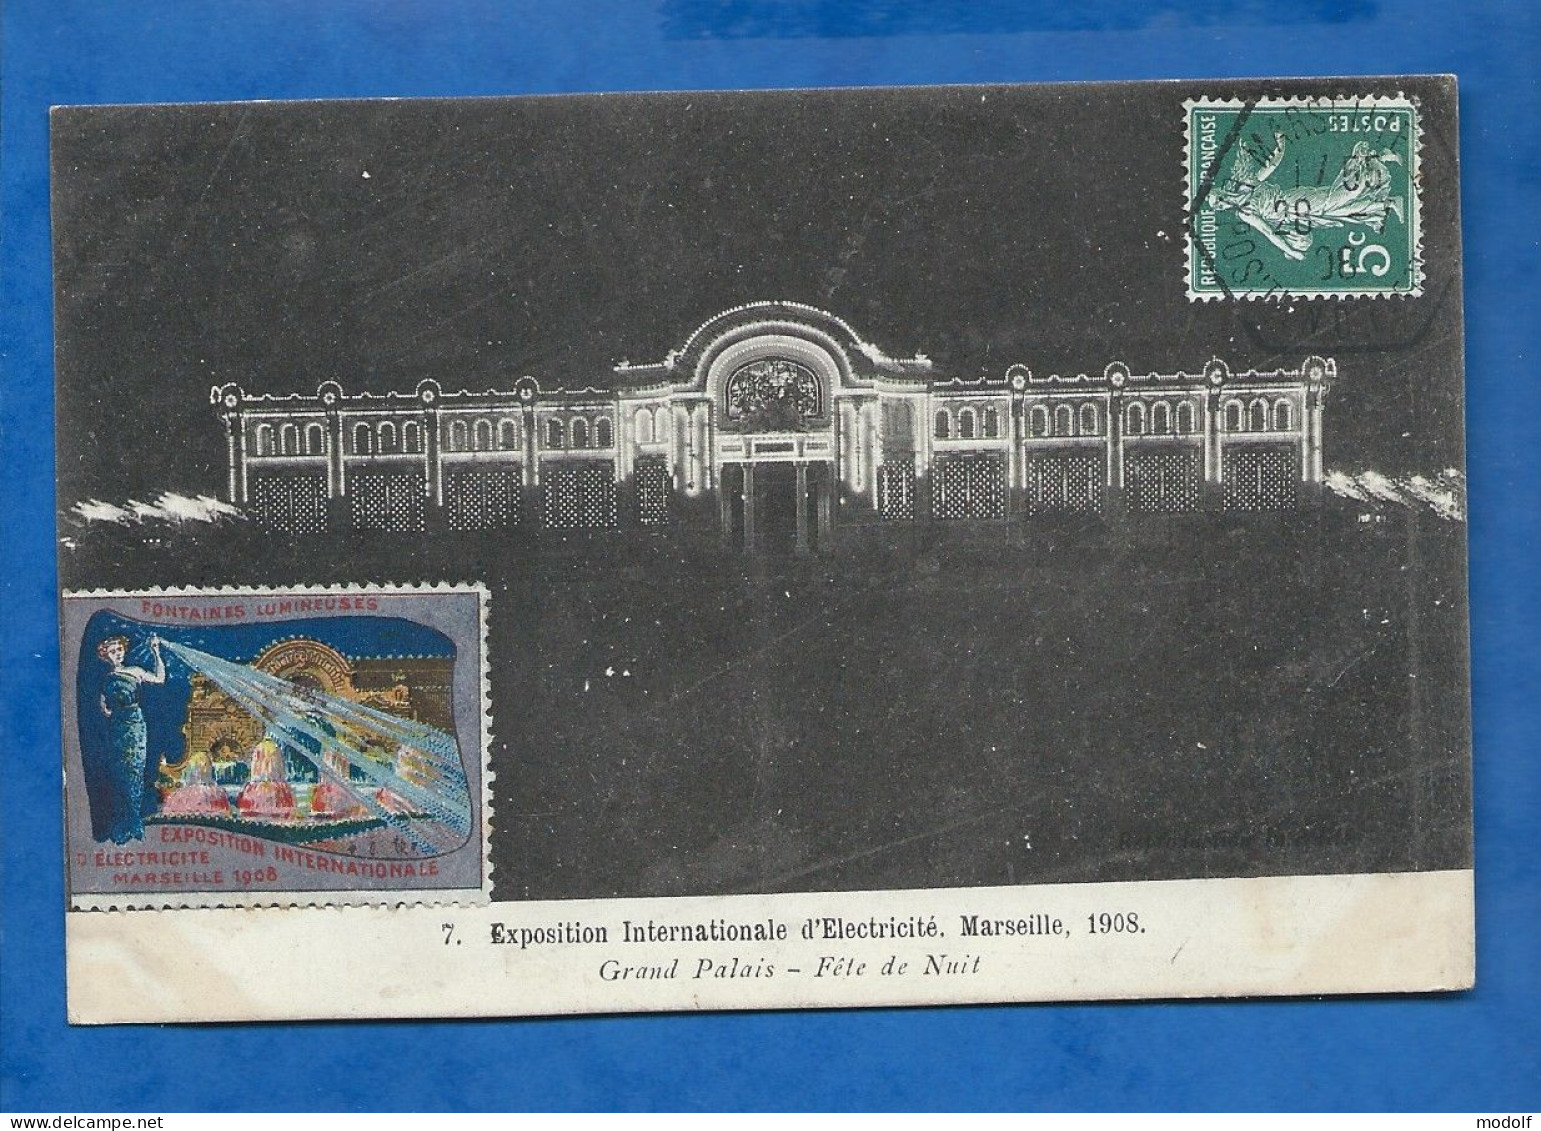 CPA - 13 - Marseille - Exposition Internationale D'Electricité - Grand Palais - Fête De Nuit - Circulée En 1908 - Electrical Trade Shows And Other